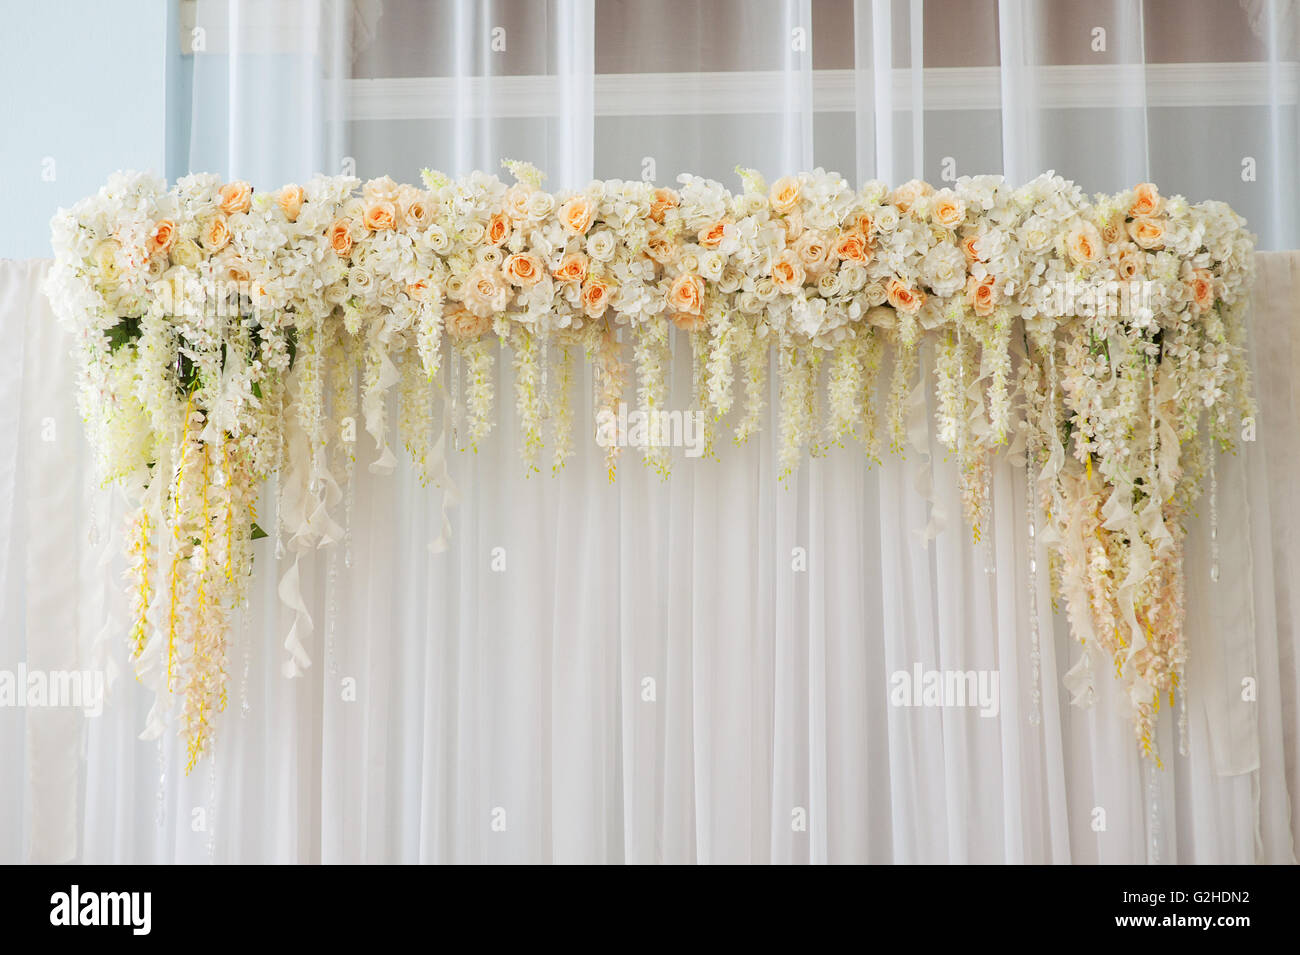 Bellissimo matrimonio arch decorate con fiori rosa e bianchi in ambienti interni Foto Stock